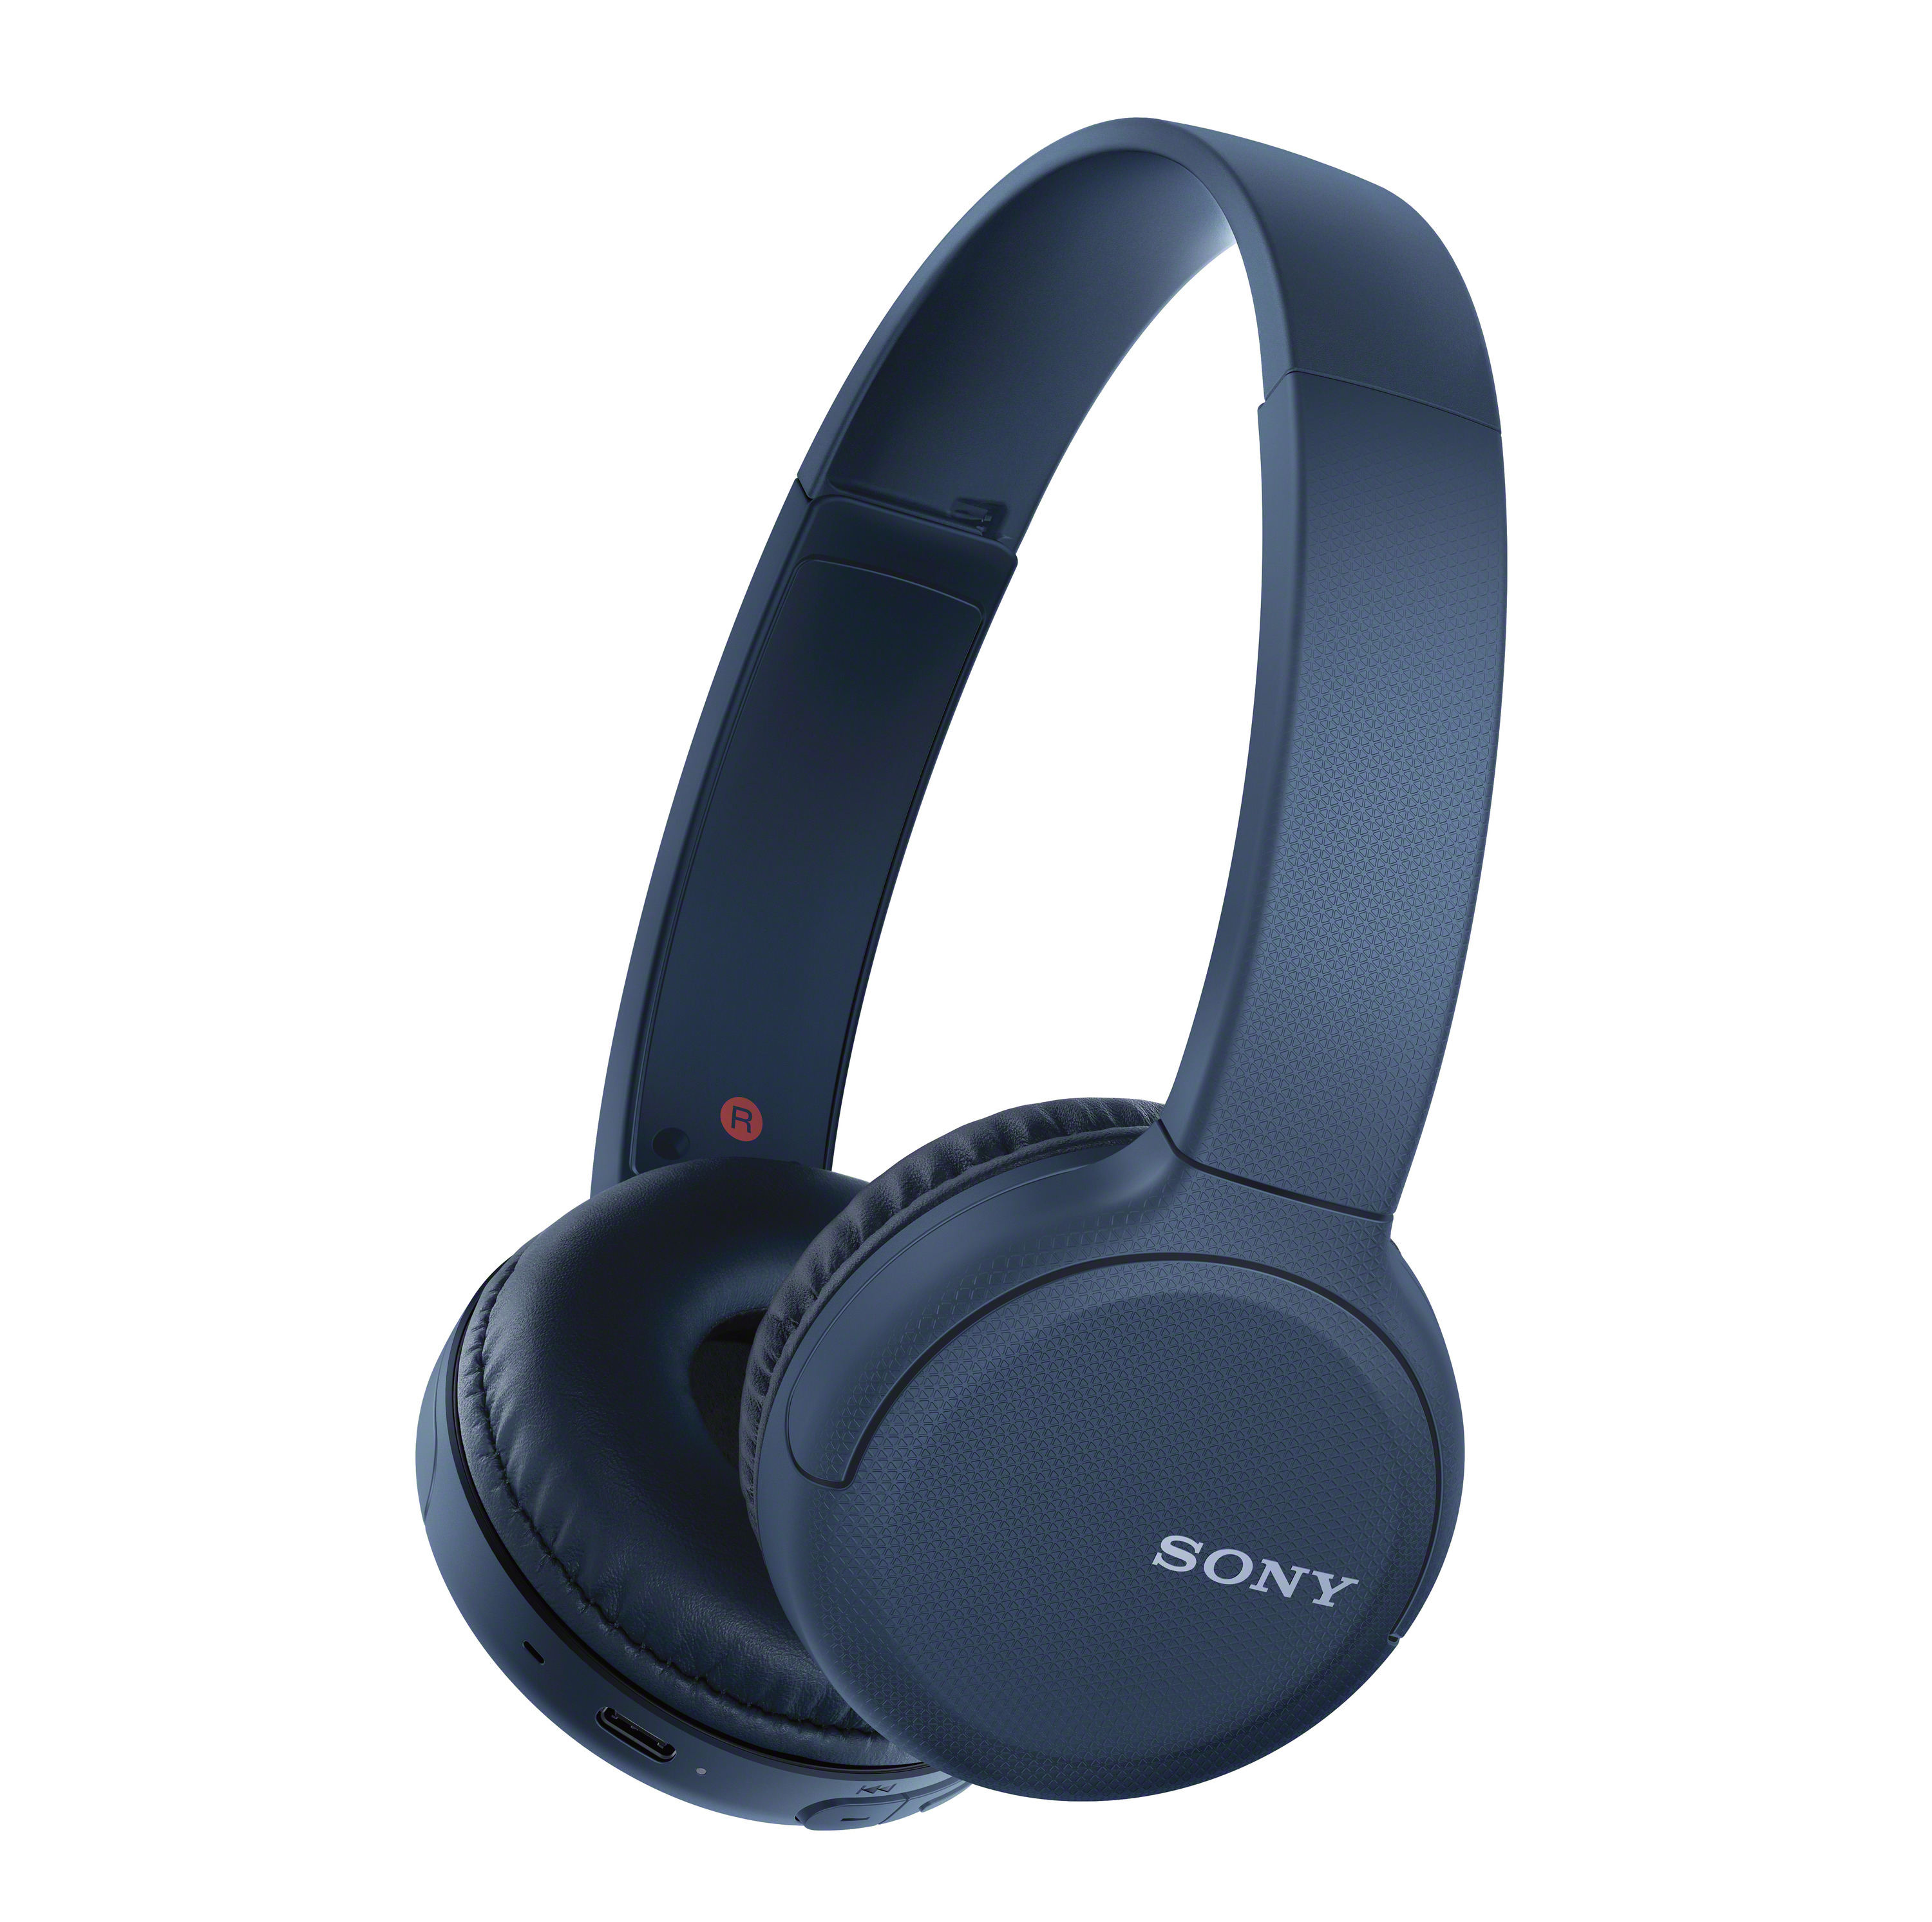 Tai nghe không dây Sony WH-CH510 - Hàng chính hãng